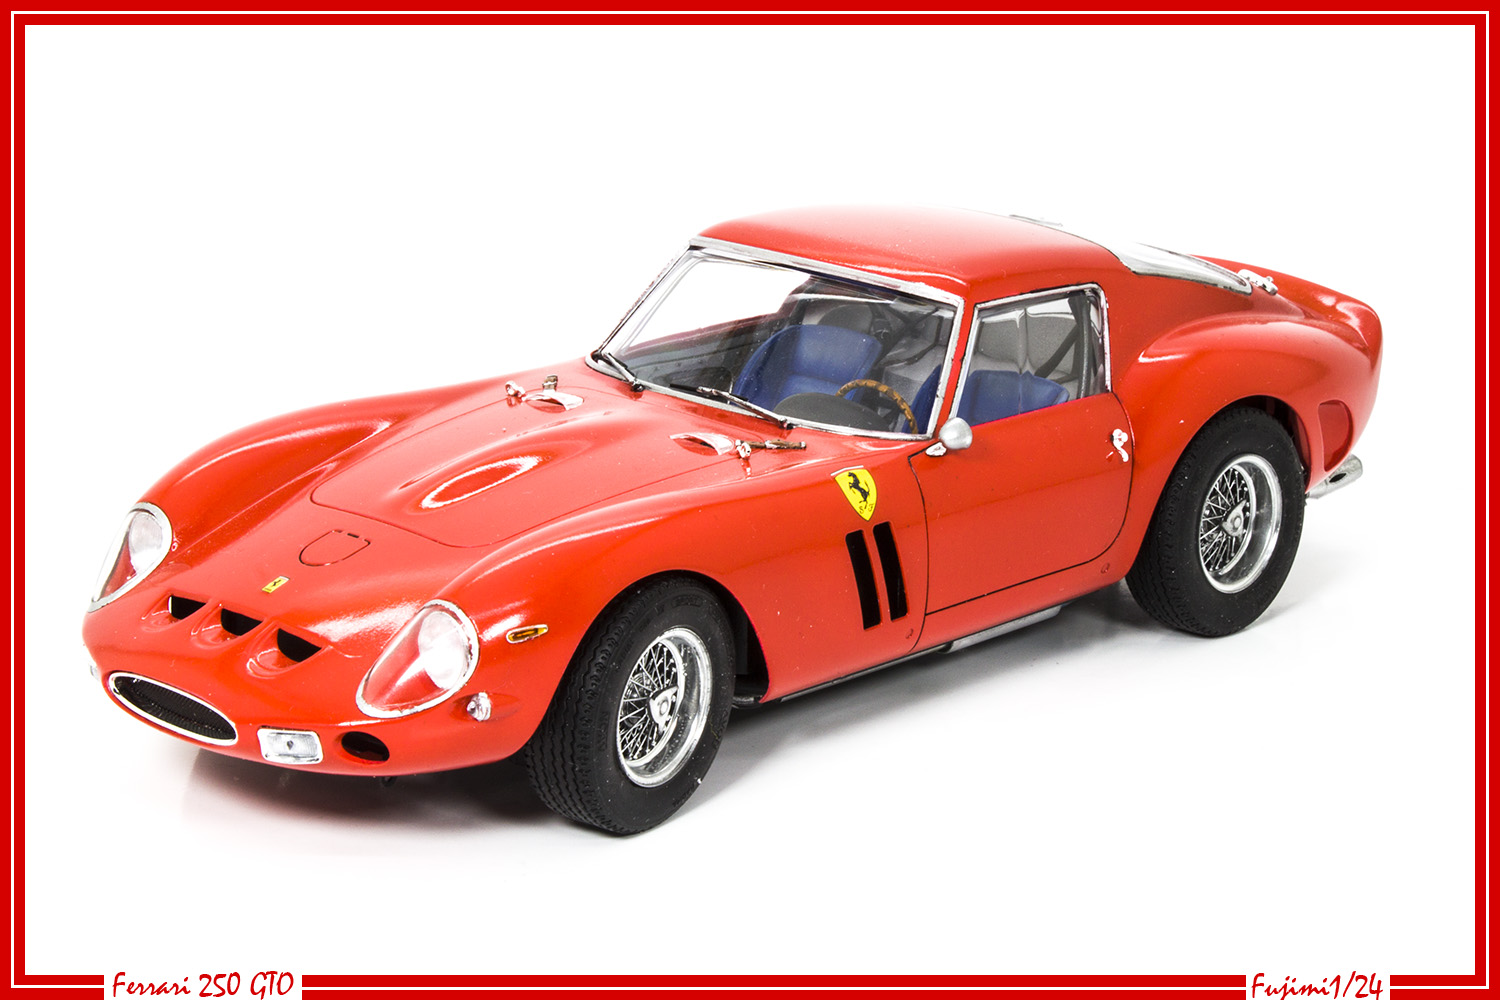 Ferrari 250 GTO - Fujimi 1/24 - Page 3 24030906564726118118369841